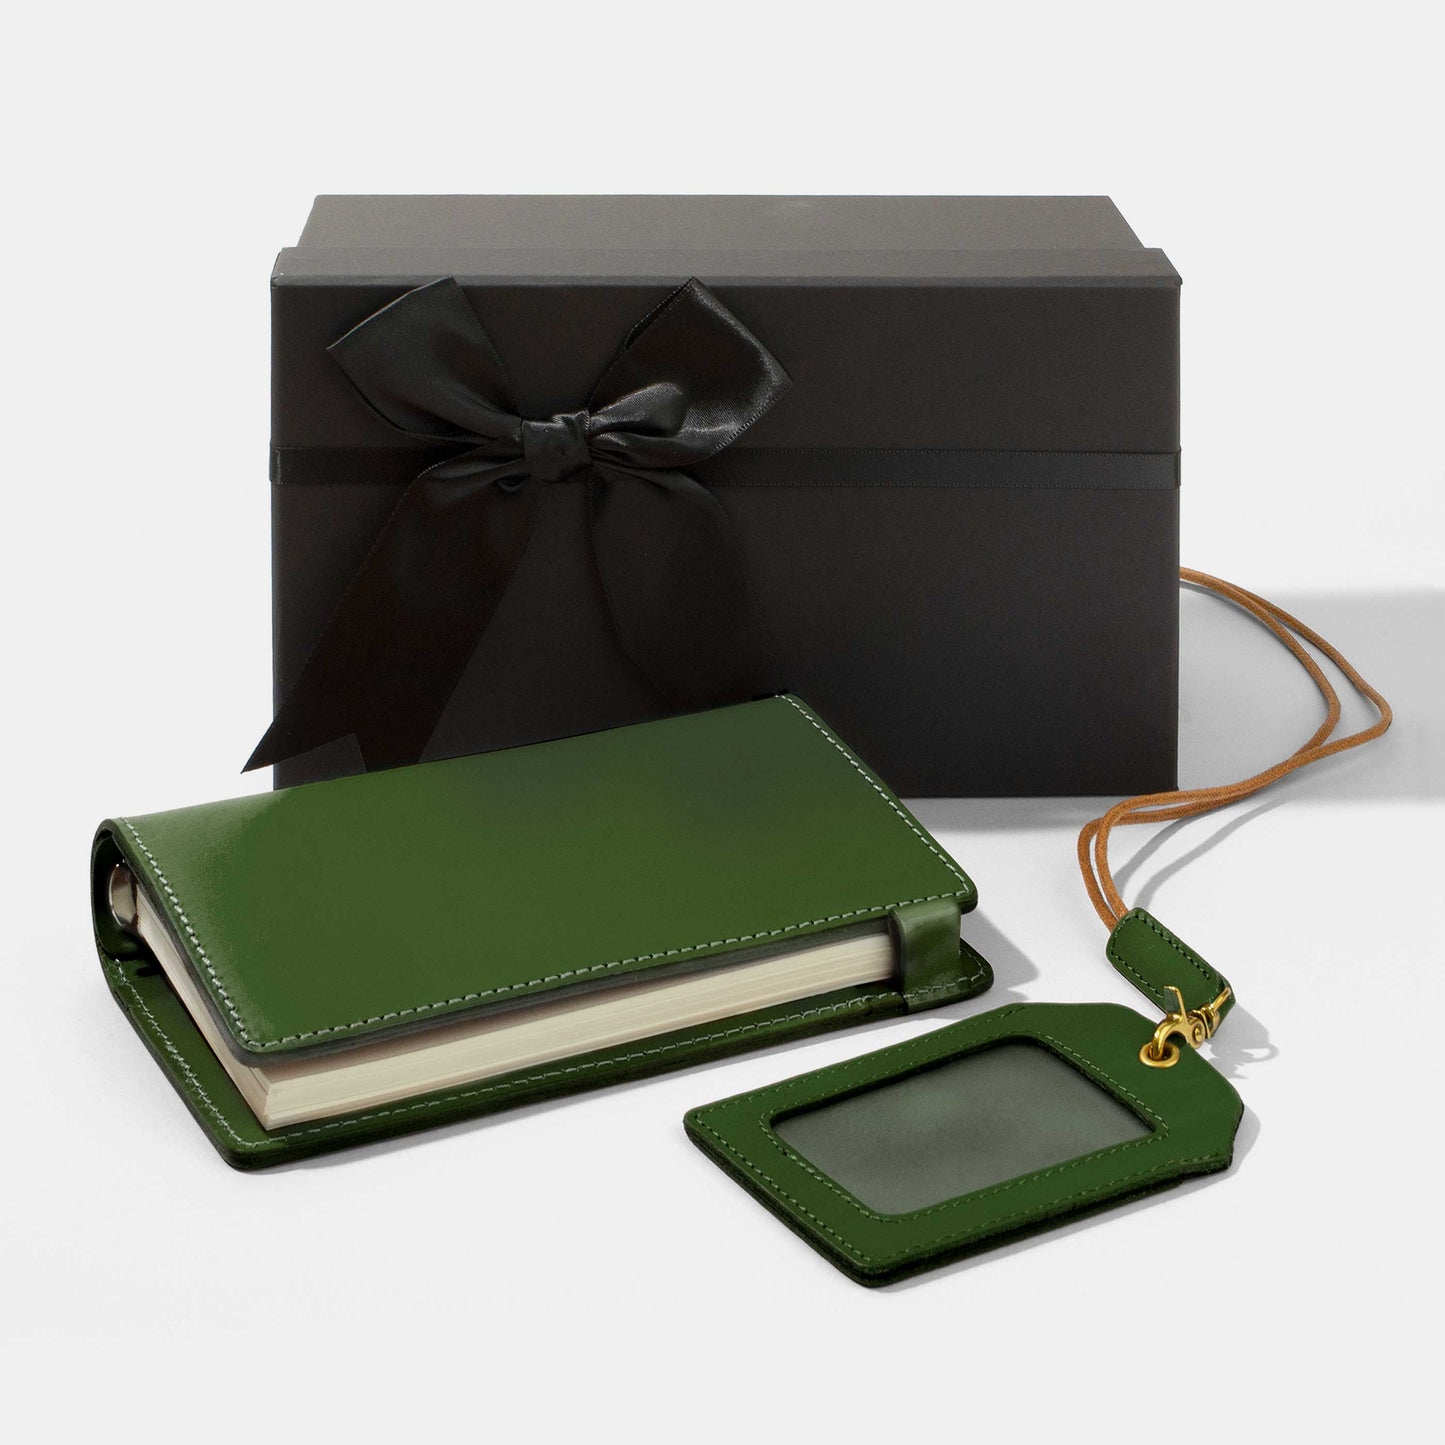 皮革筆記本及皮革證件套禮品套裝 | 父親禮物 | 企業禮品